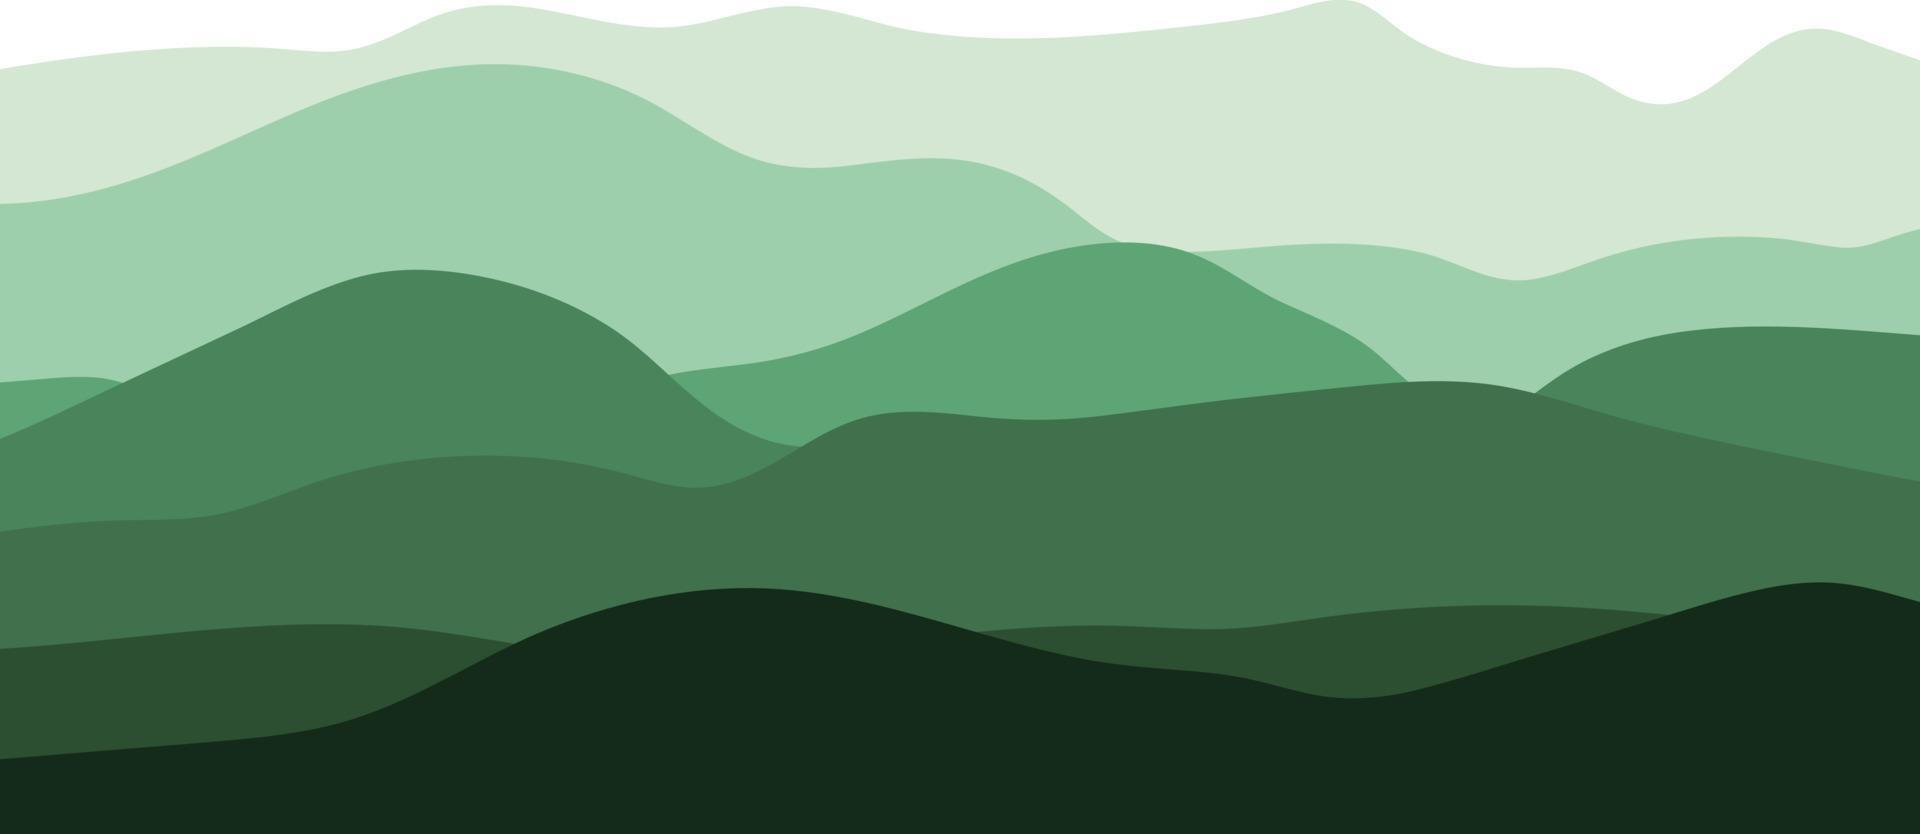 montagnes, vecteur. illustration avec la silhouette des montagnes en vert sur fond blanc. vecteur